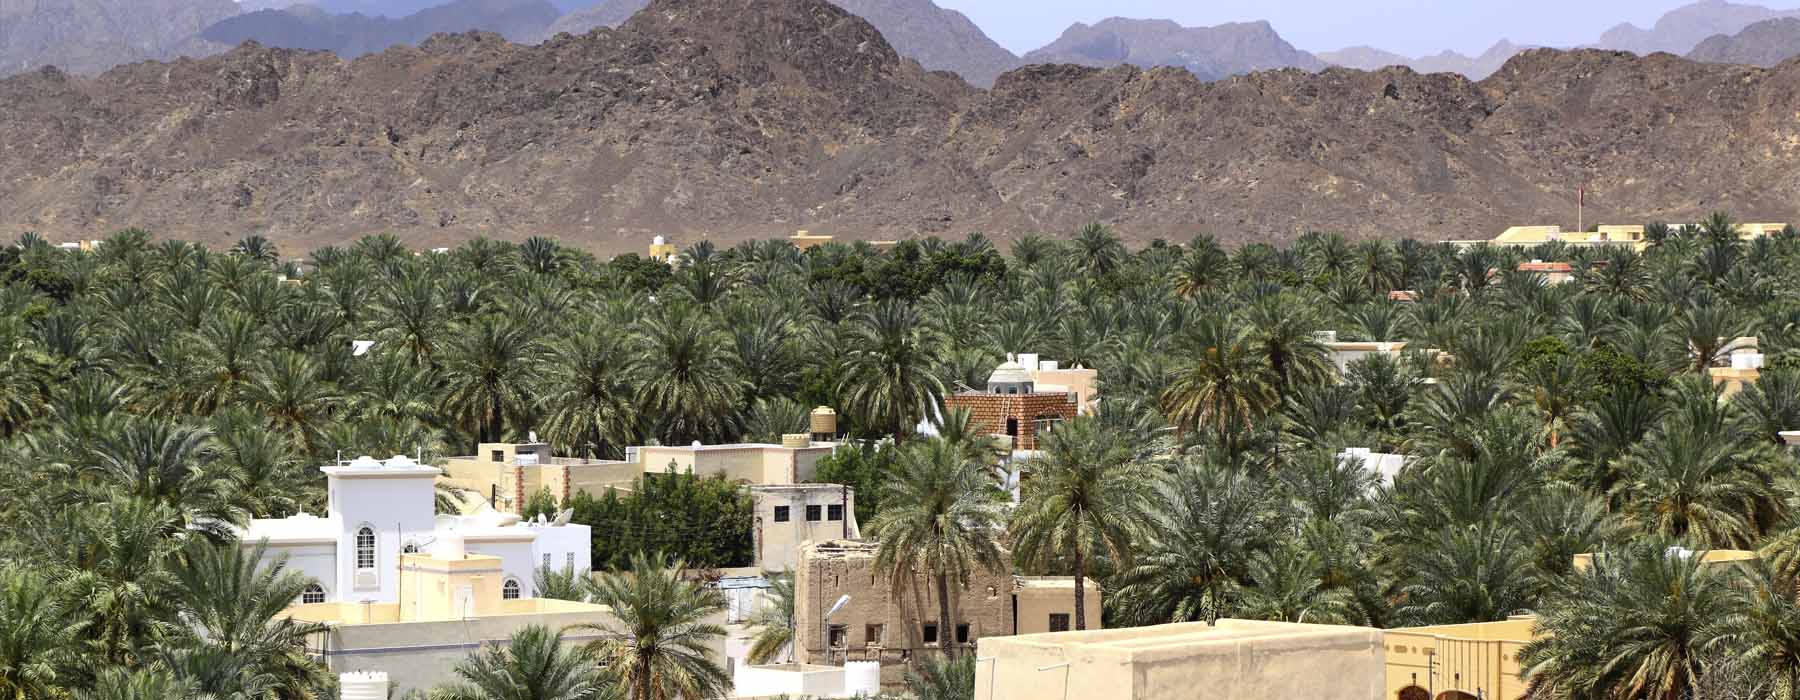 Oman<br class="hidden-md hidden-lg" /> Beach Holidays